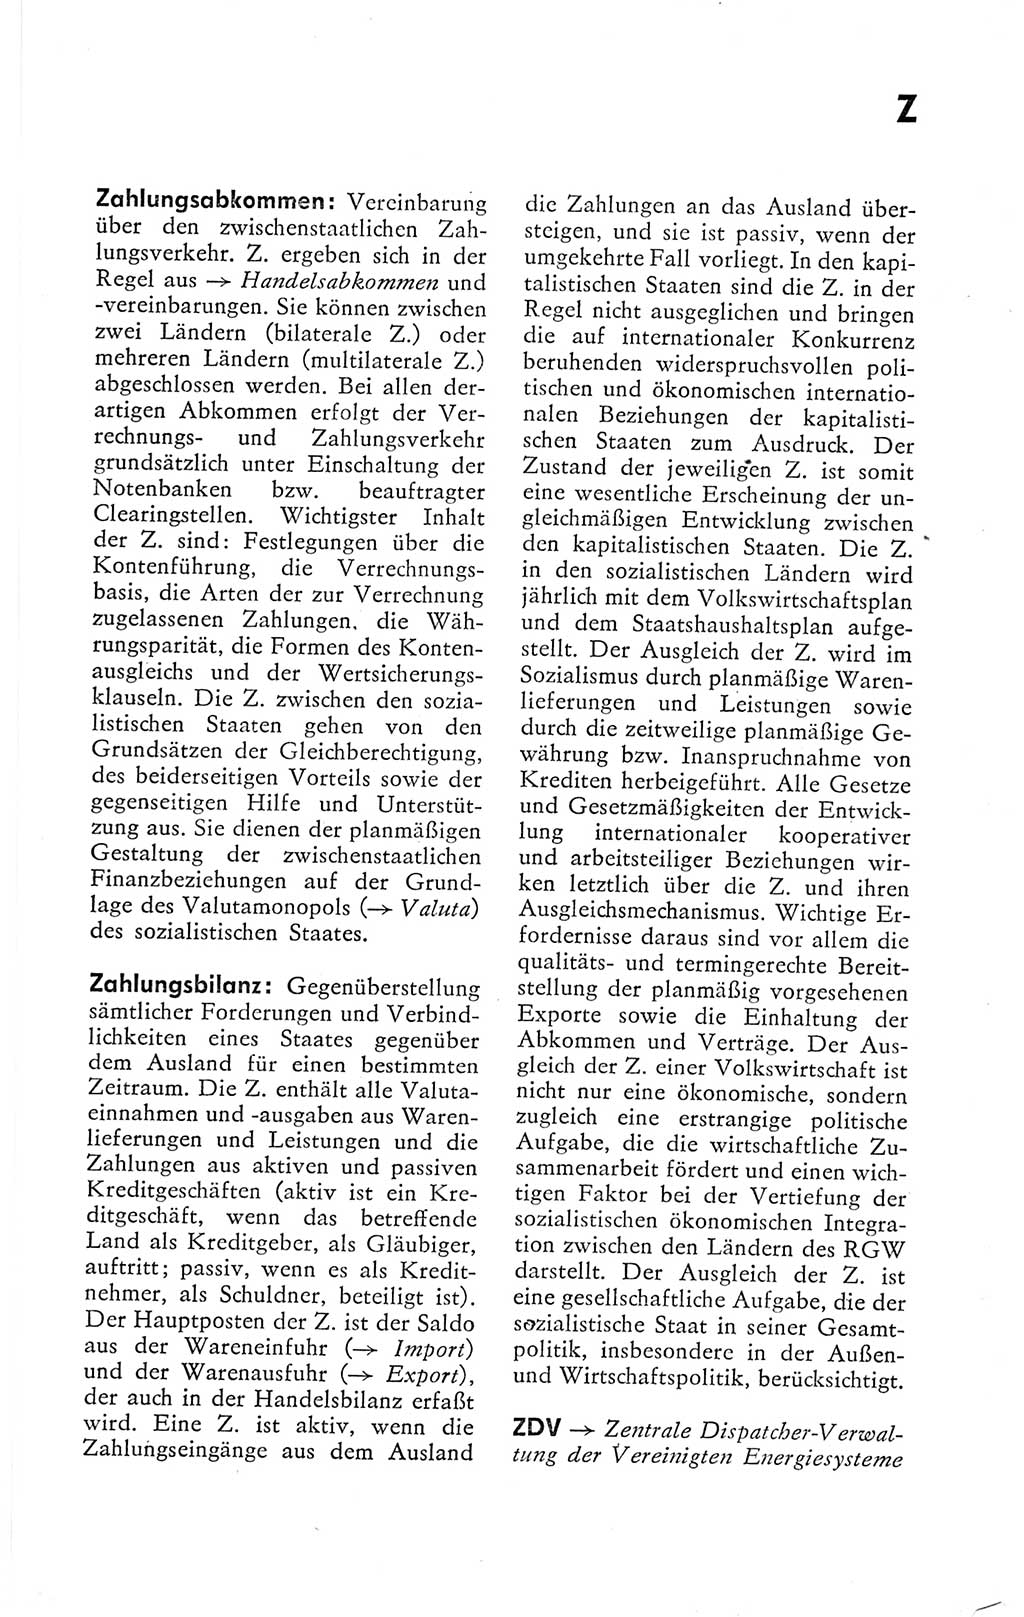 Kleines politisches Wörterbuch [Deutsche Demokratische Republik (DDR)] 1978, Seite 1037 (Kl. pol. Wb. DDR 1978, S. 1037)